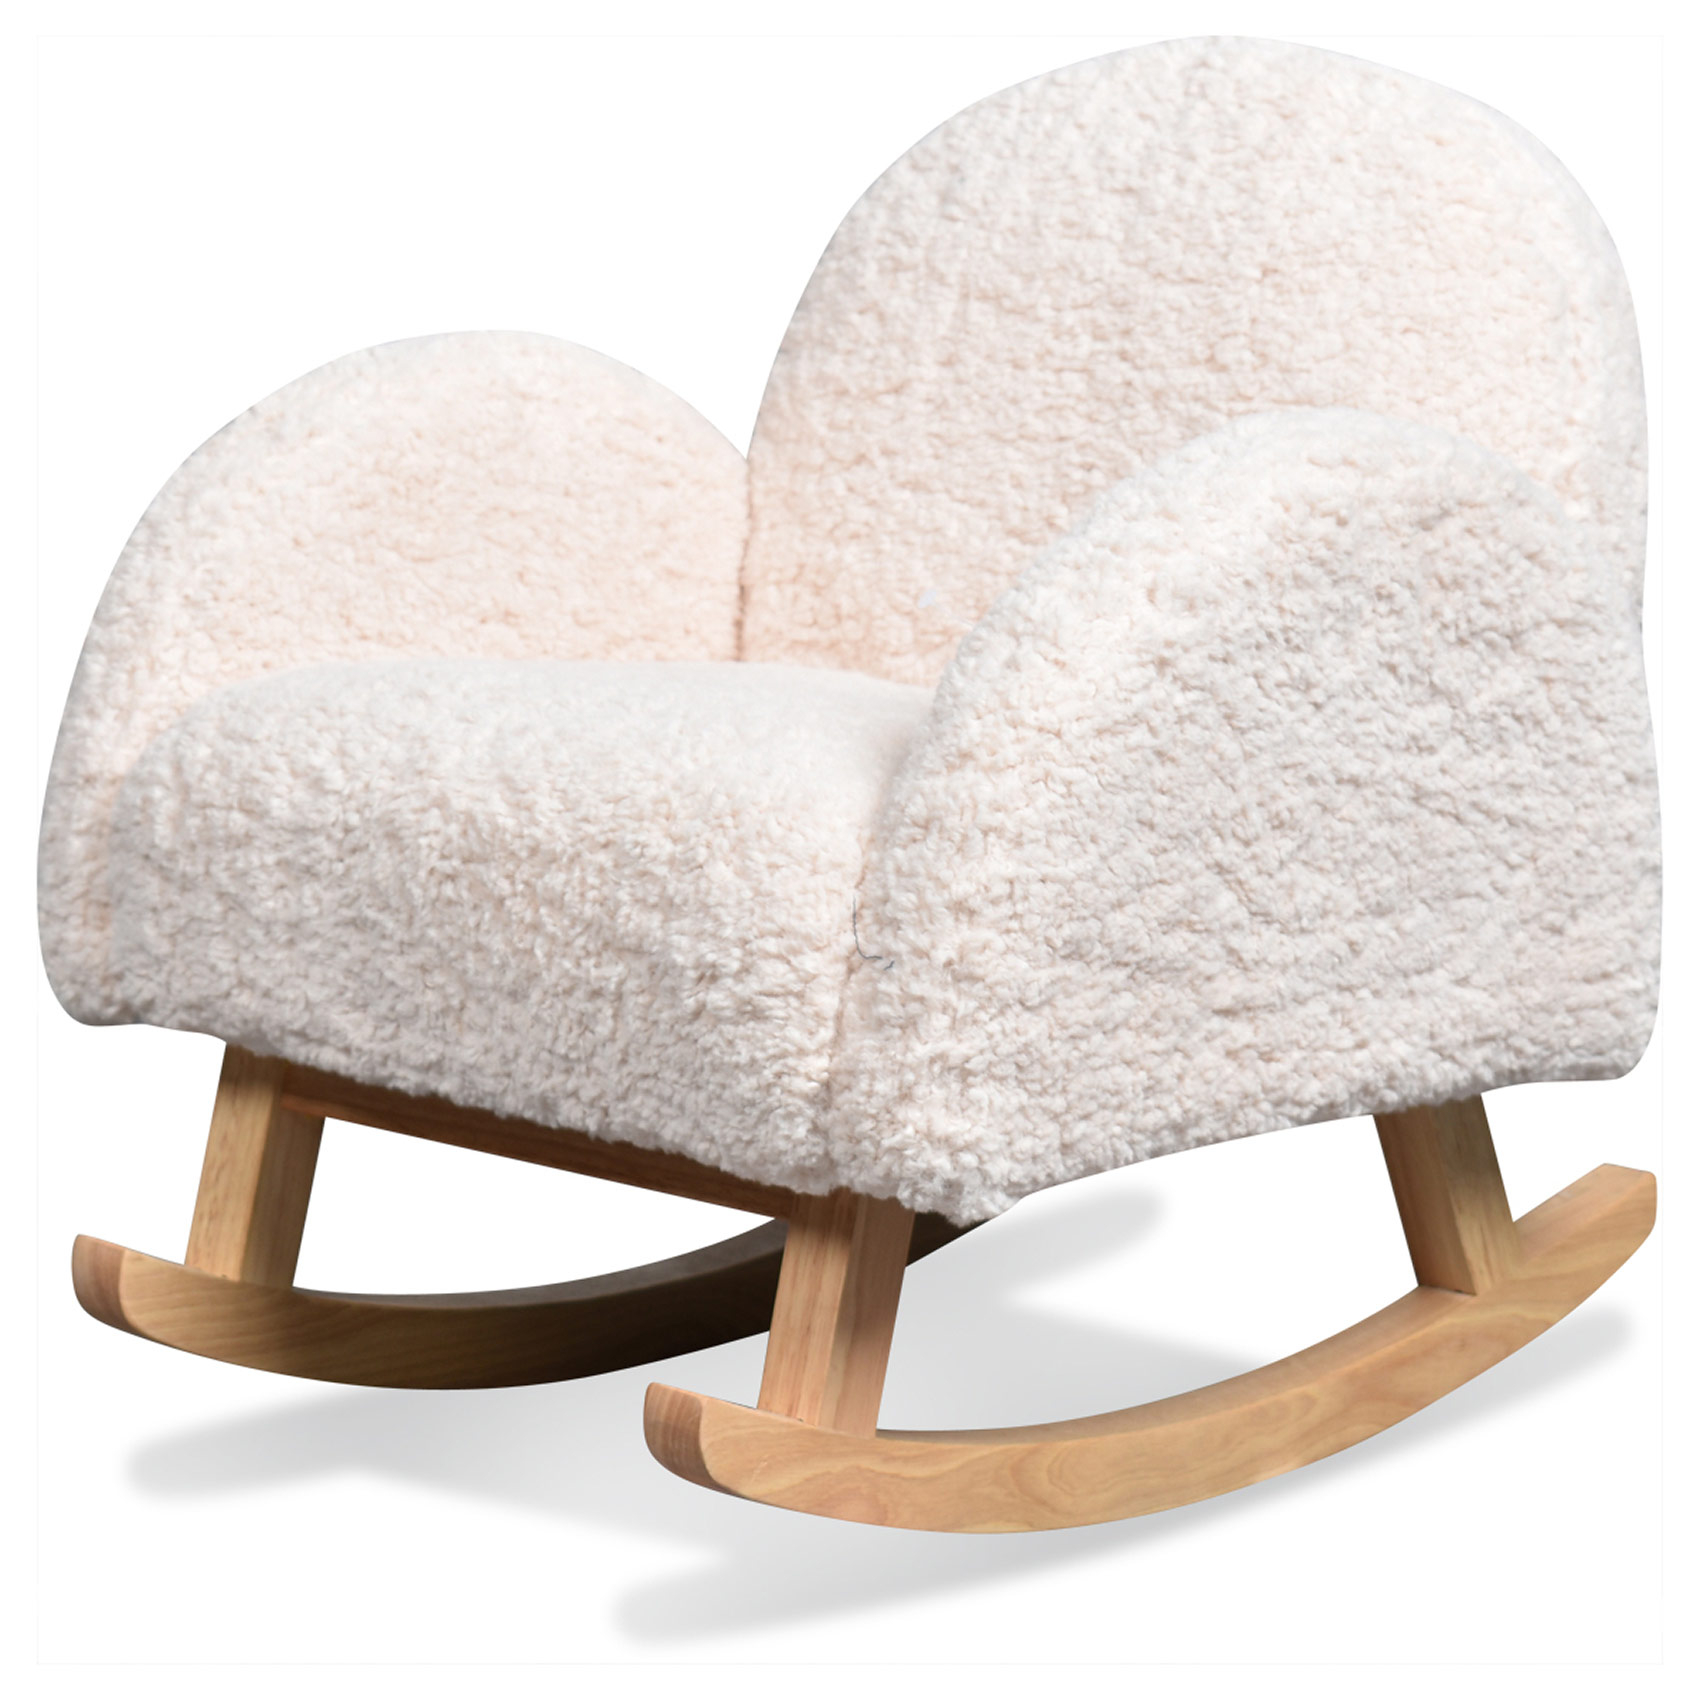 mini fauteuil à bascule bouclette fourrure/bois blanc 45x53x51 cm